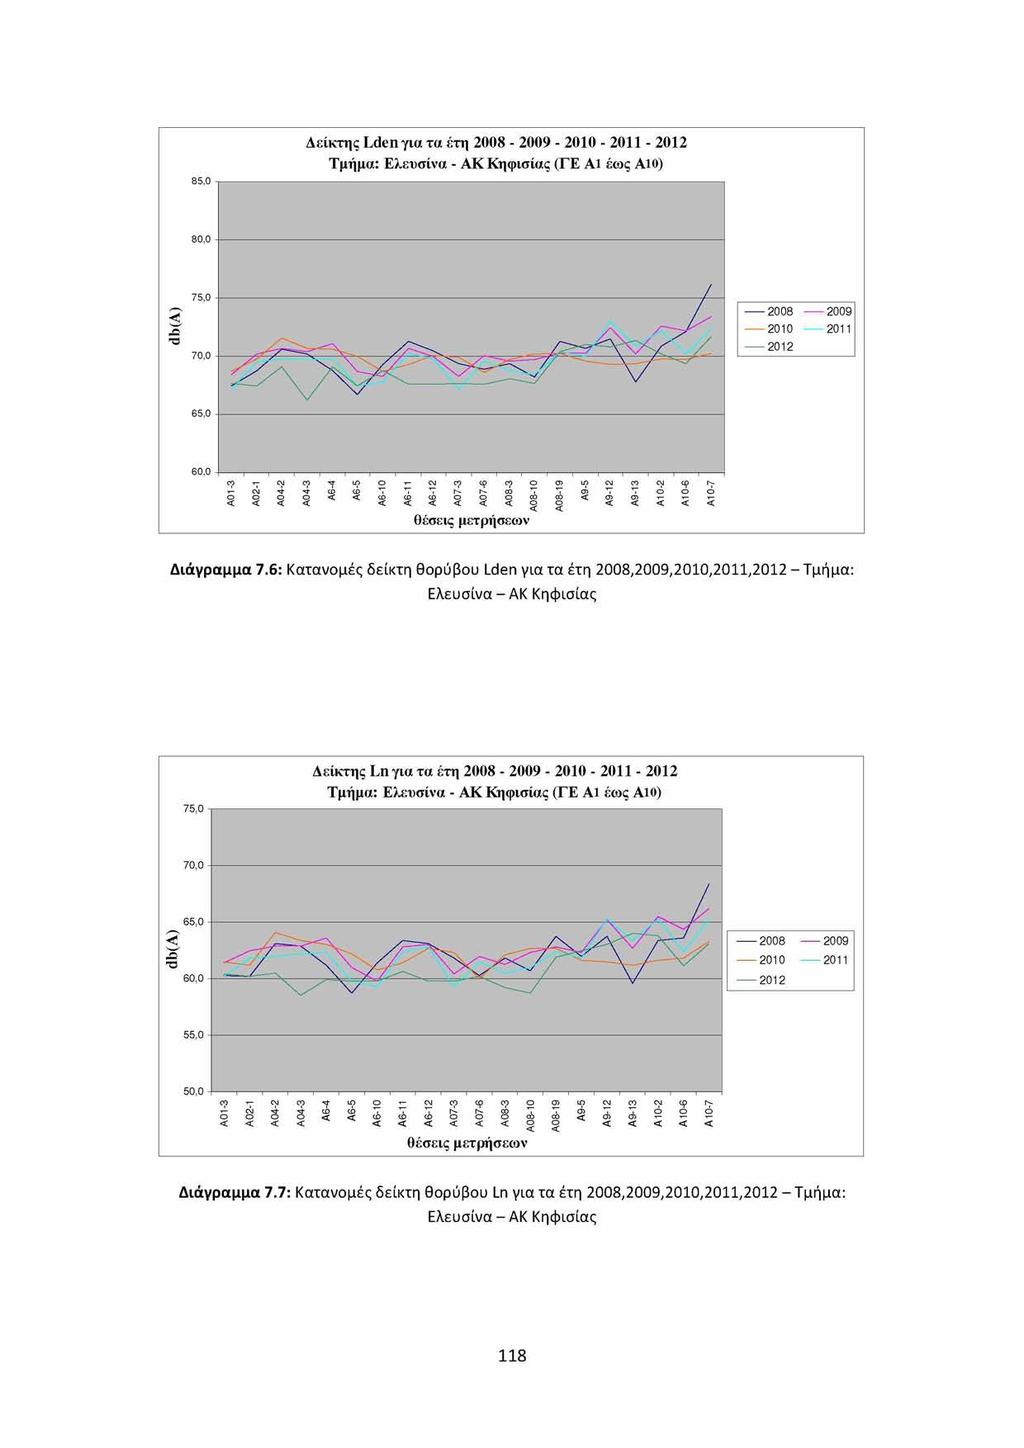 Δείκτης Lden για τα έτη 2008-2009 - 2010-2011 - 2012 Τμήμα: Ελευσίνα - ΑΚ Κηφισίας (ΓΕ Α1 έως Α10) 2008 ------2009 ------2010 ------2011 ------2012 θέσεις μετρήσεων Διάγραμμα 7.